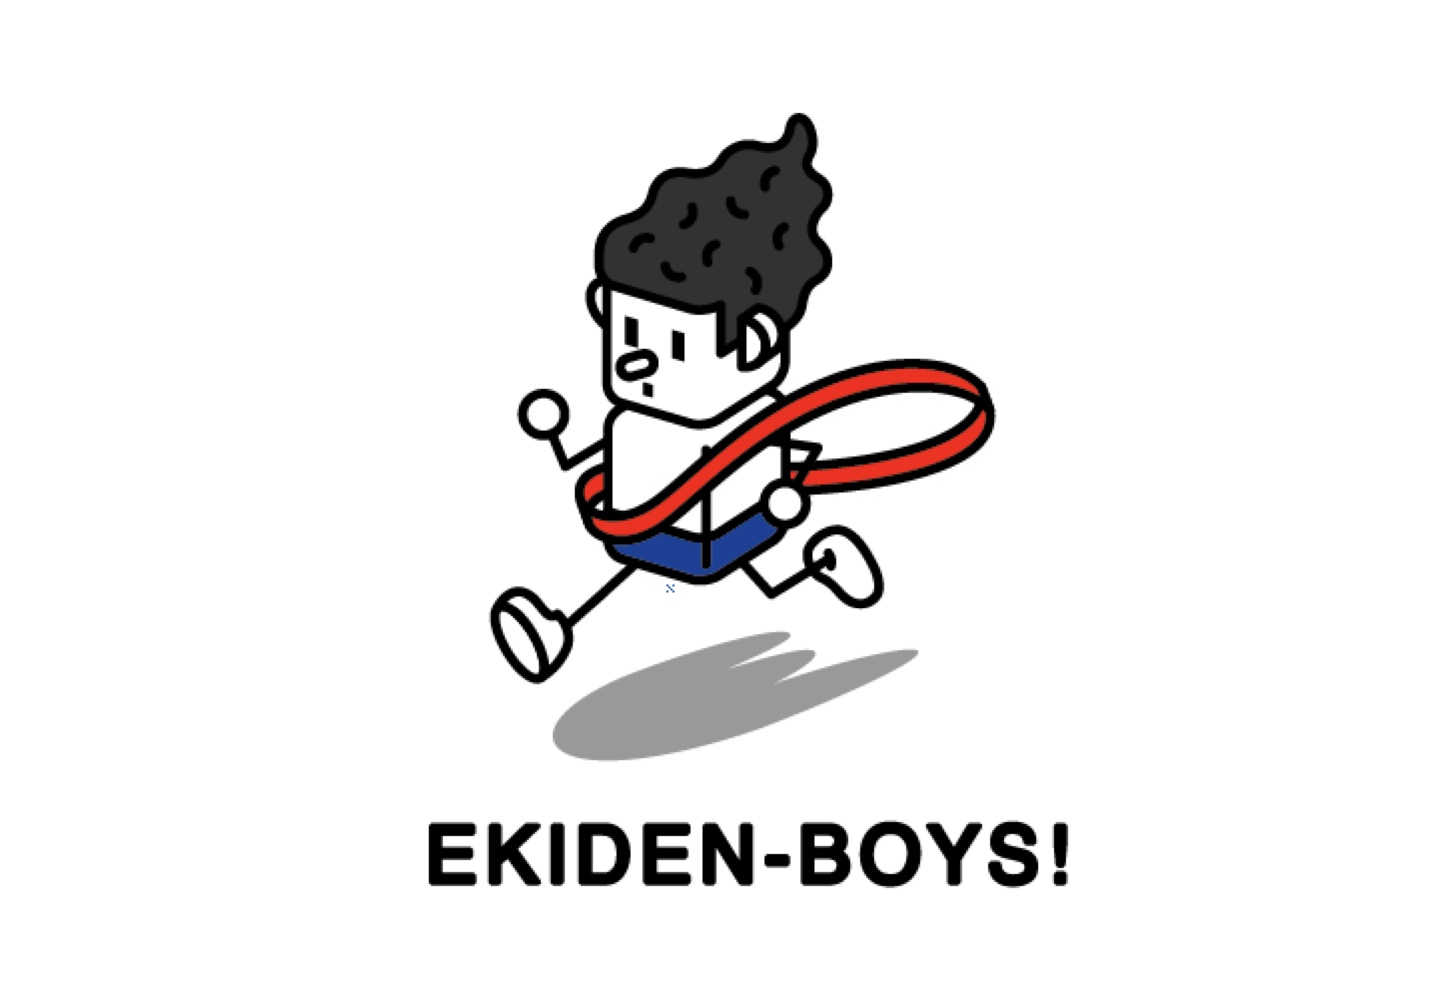 EKIDEN-BOYS!